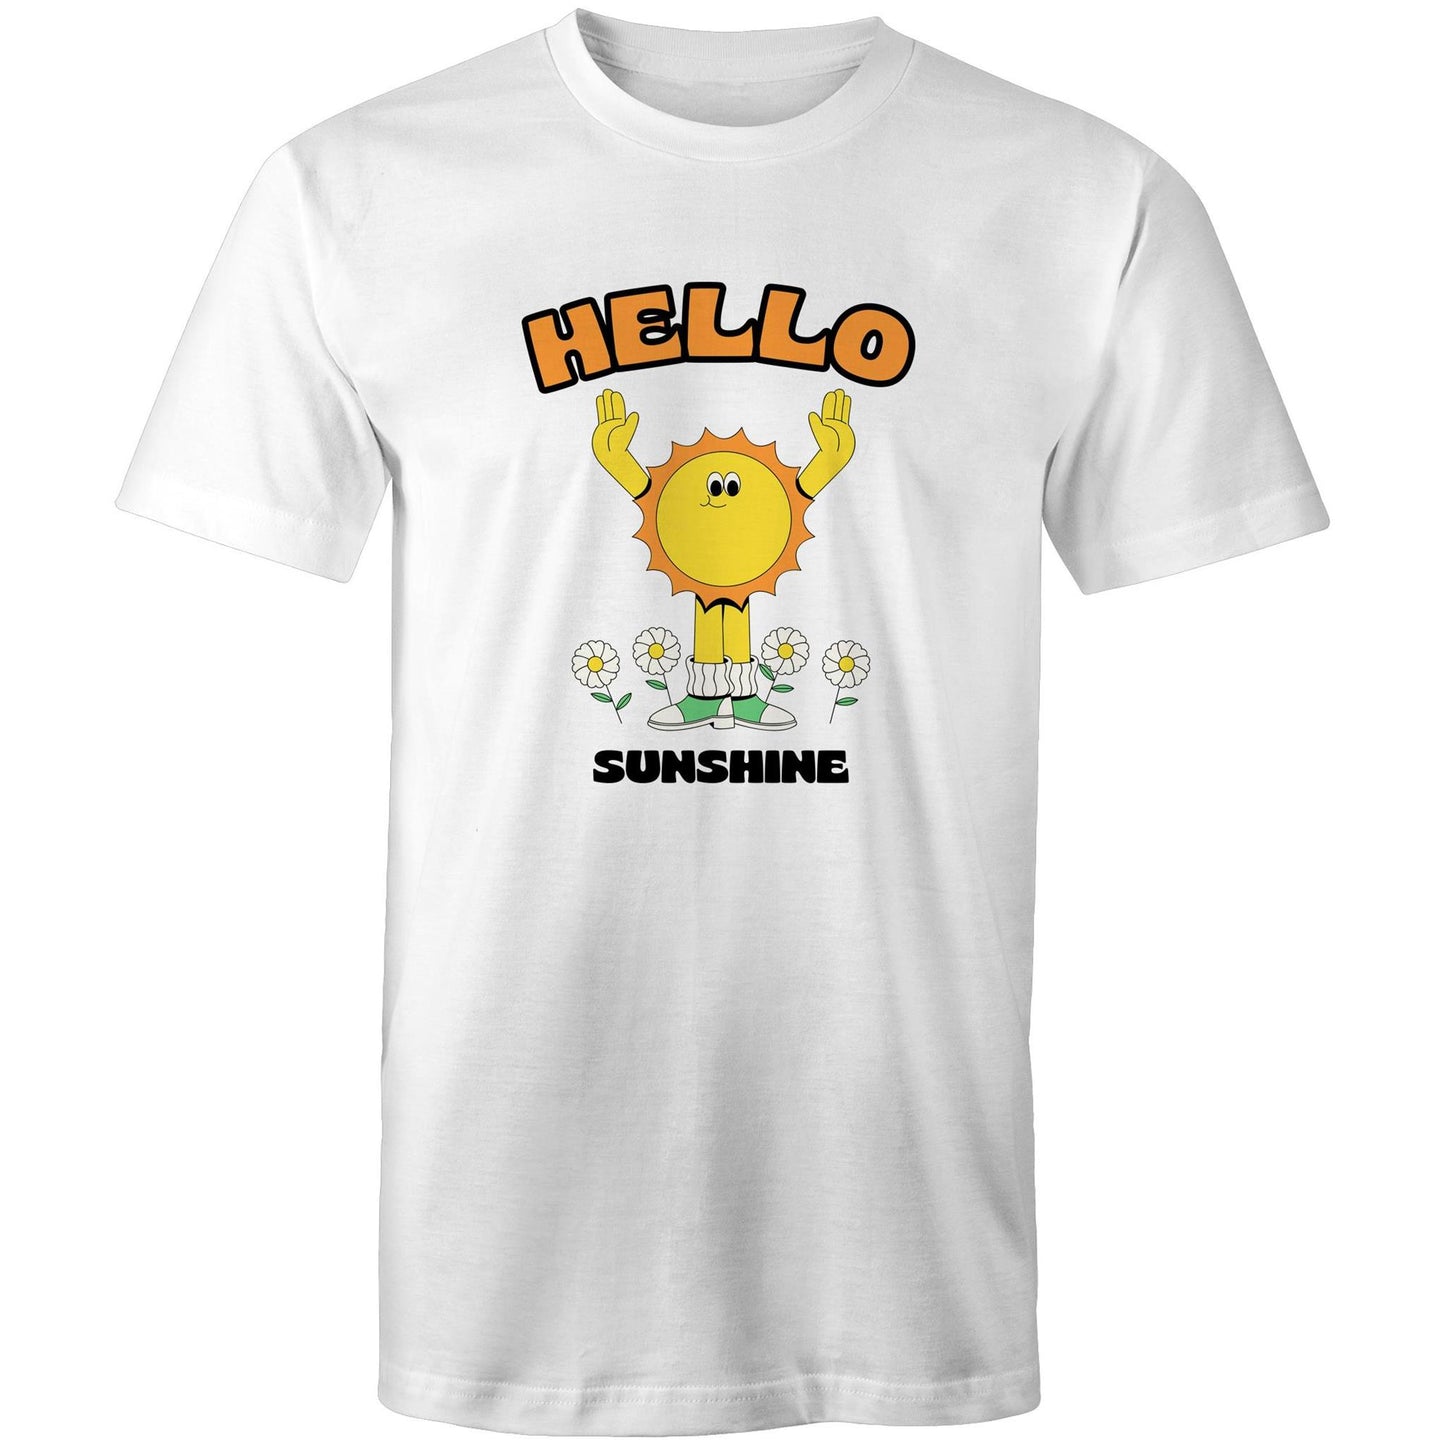 Hello Sunshine - Mens T-Shirt White Mens T-shirt Retro Summer